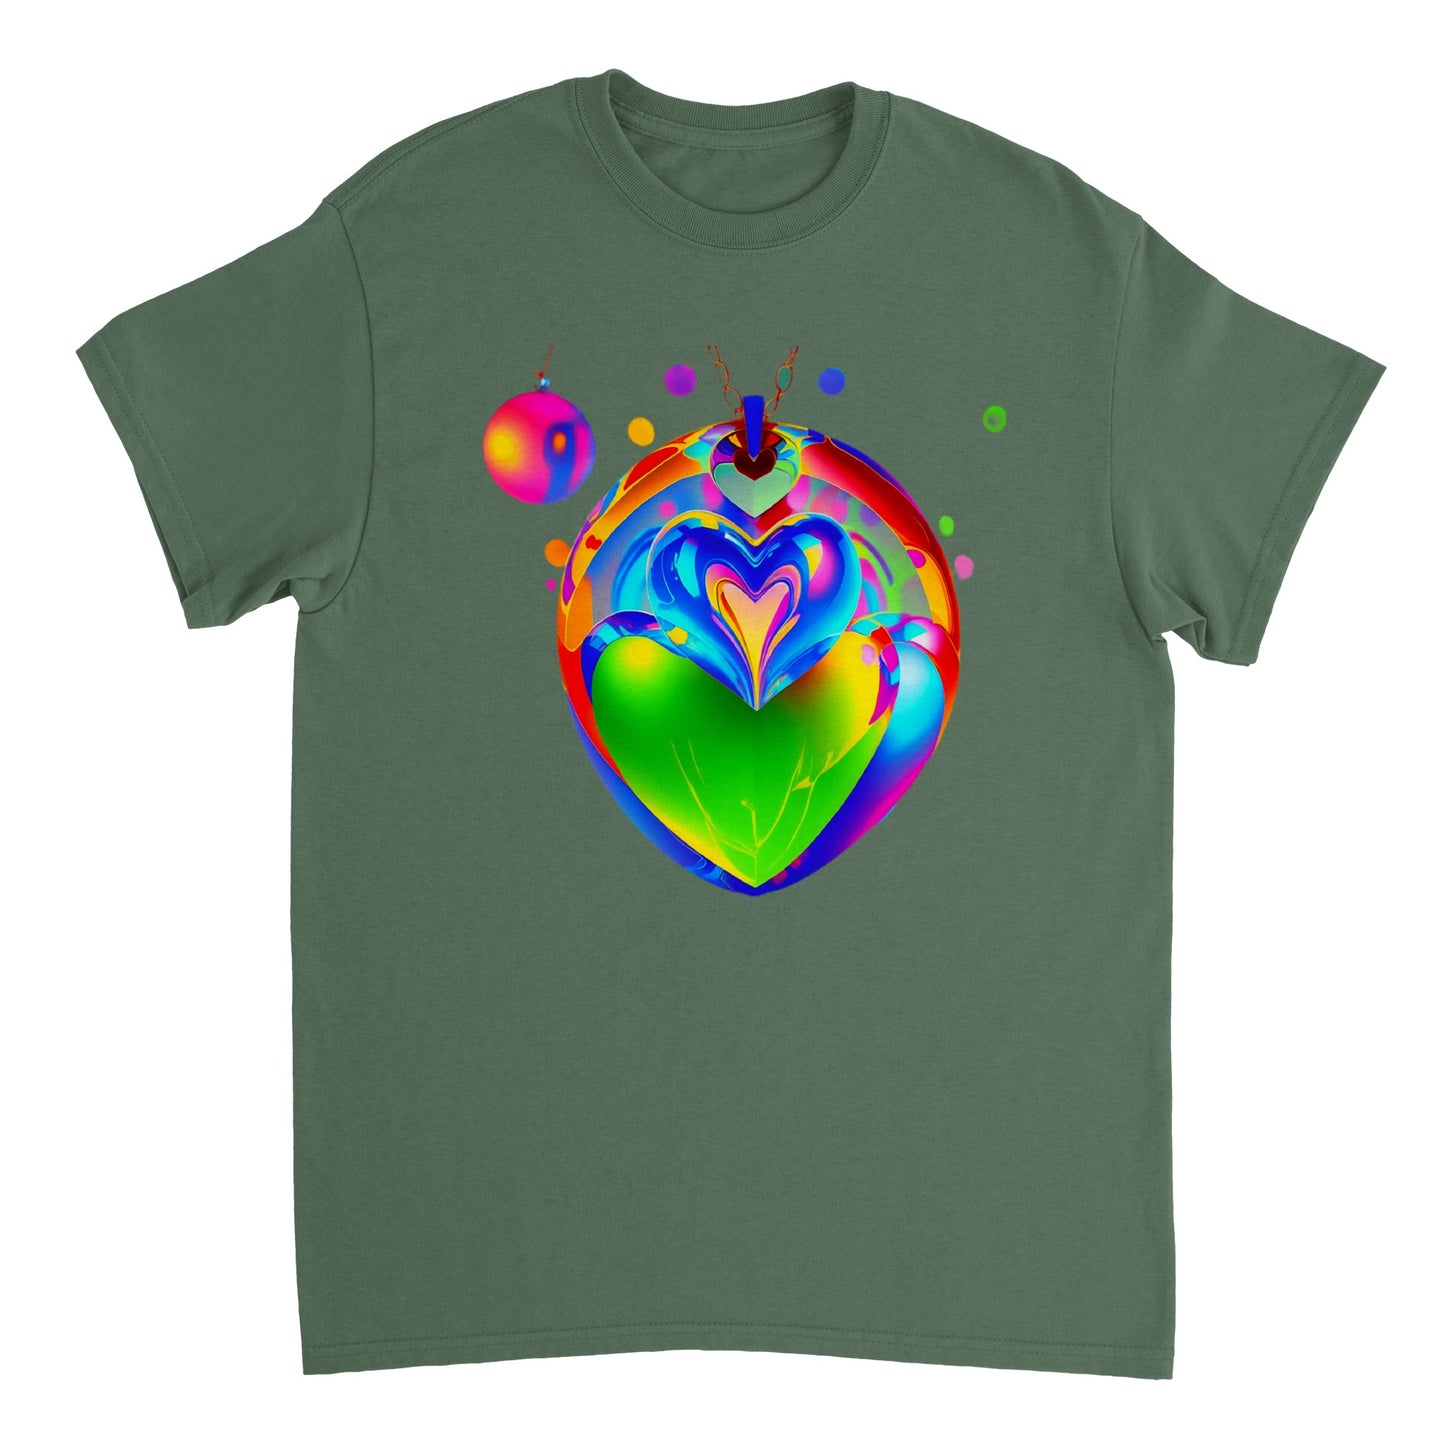 Love Heart - Heavyweight Unisex Crewneck T-shirt 50